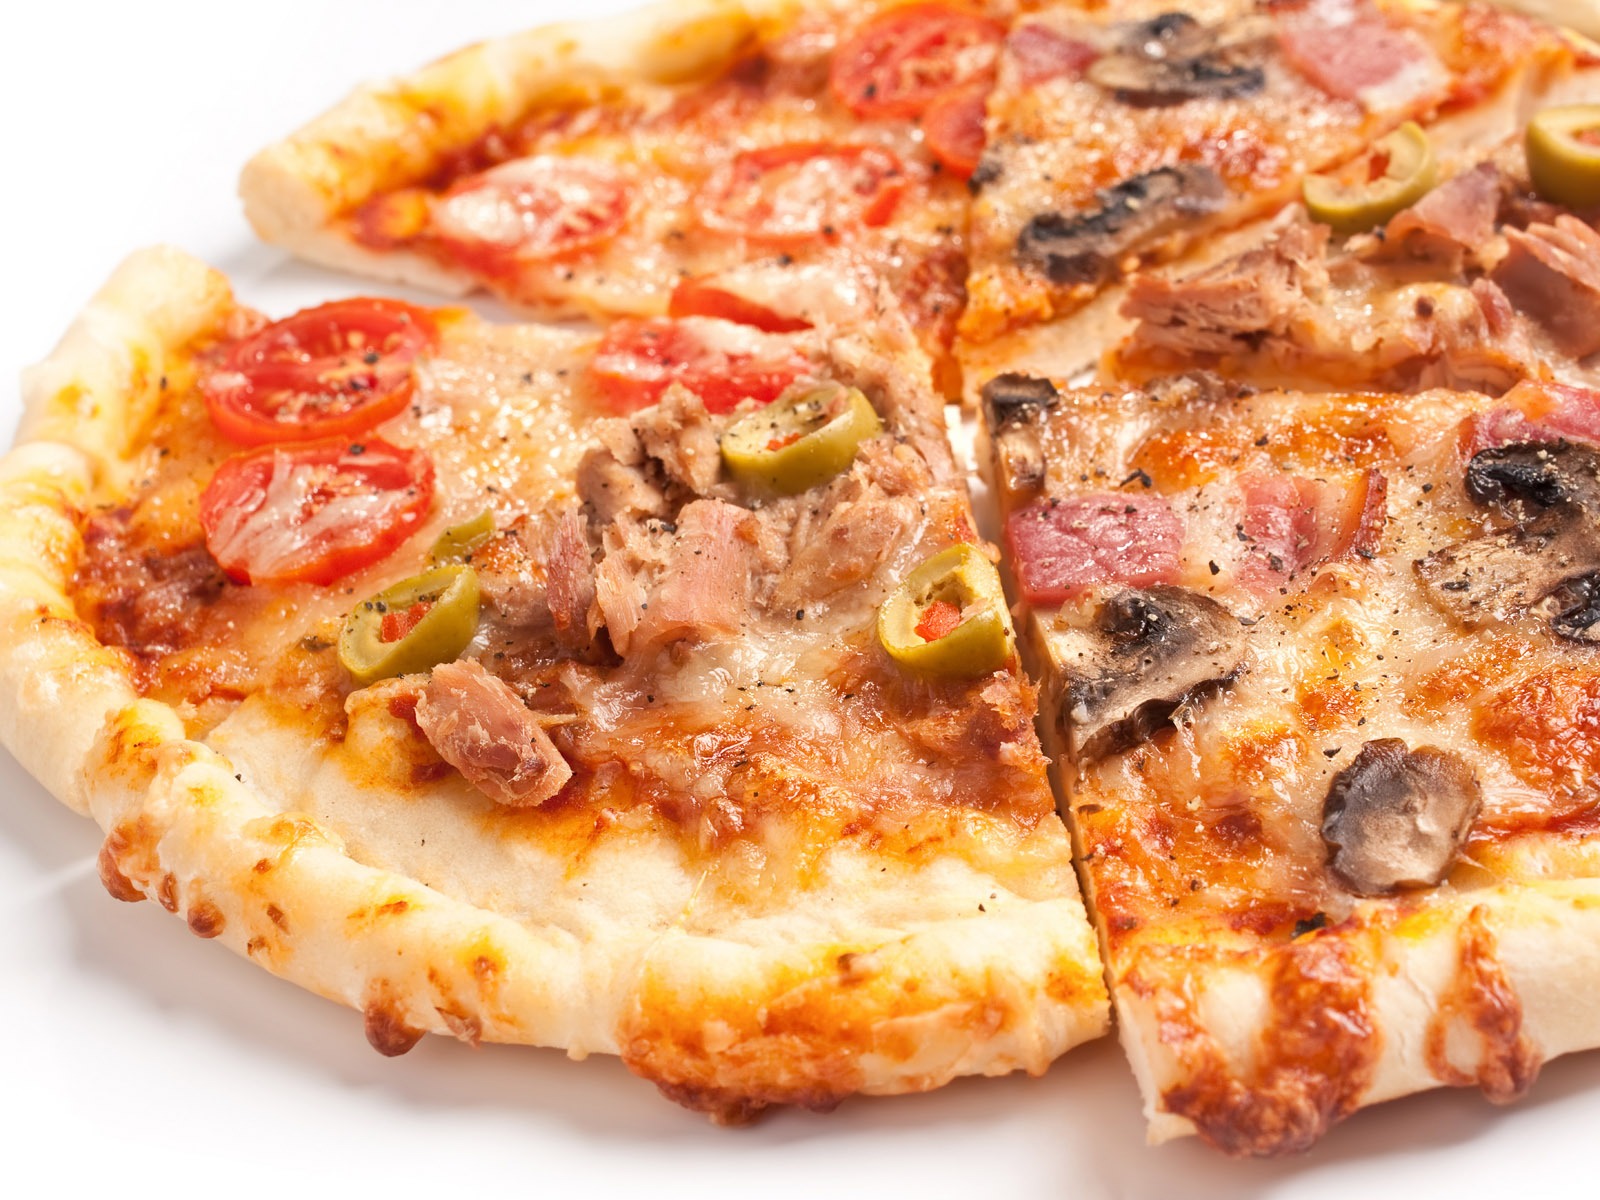 Fondos de pizzerías de Alimentos (3) #8 - 1600x1200